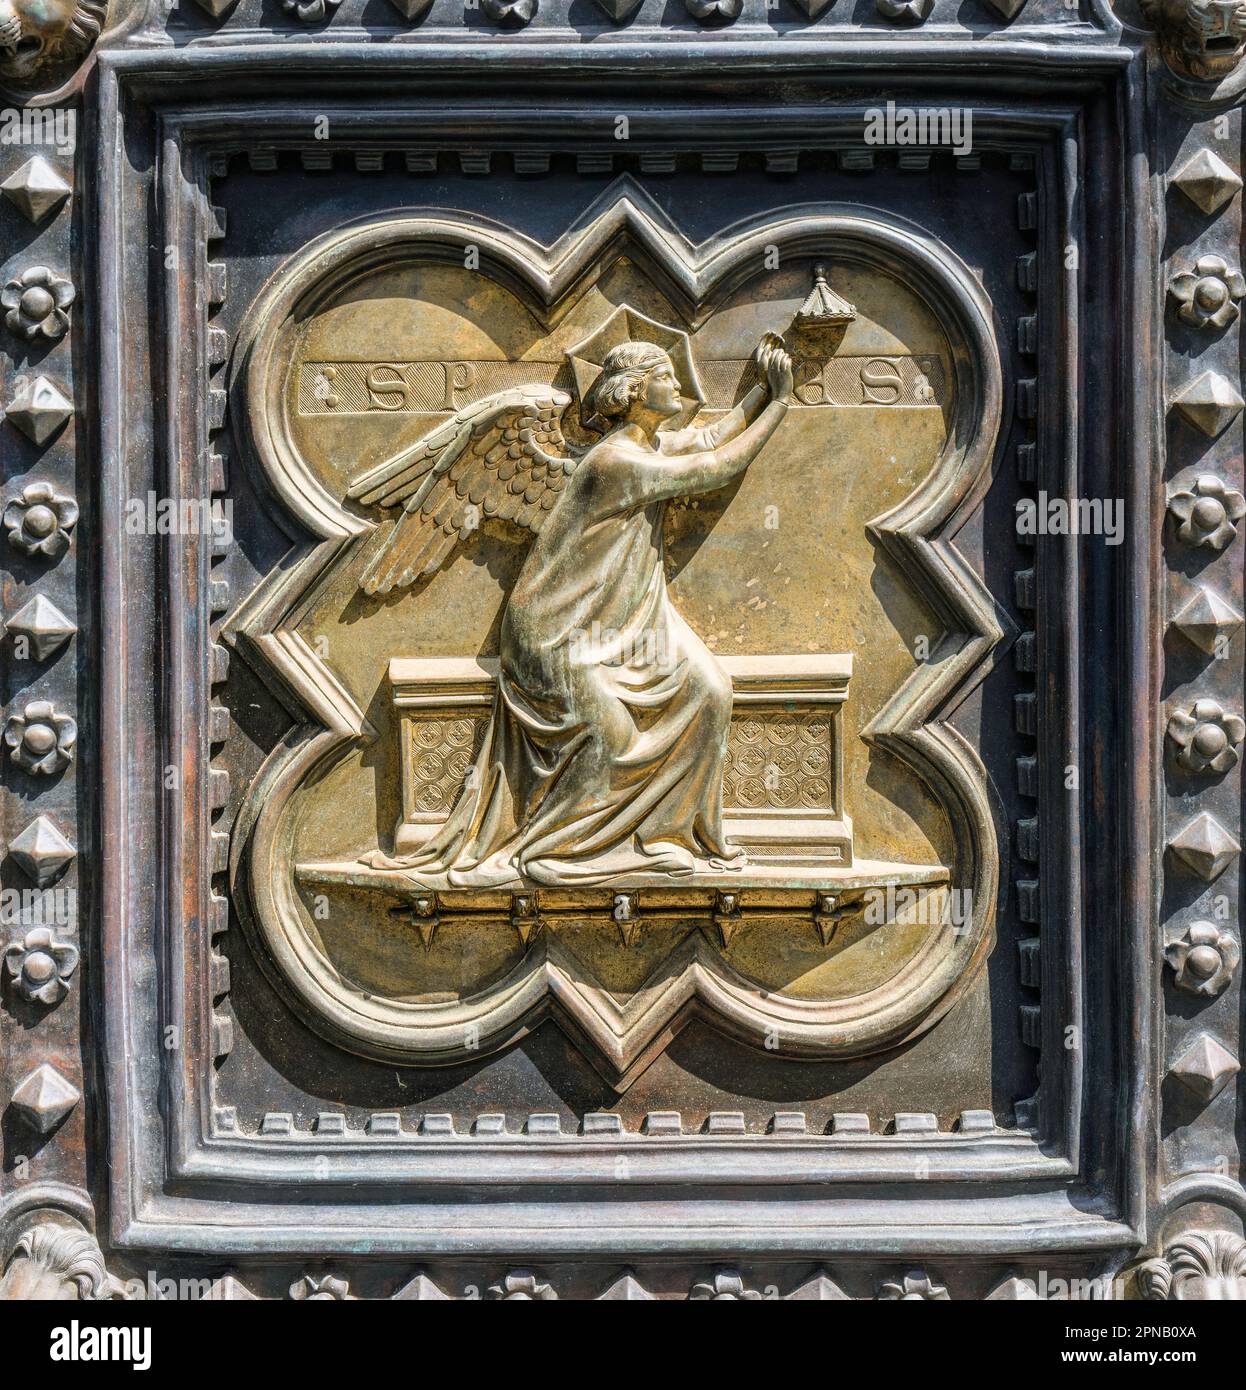 Podiumsdiskussion mit Hope an der Südtür des Battistero di San Giovanni oder Baptisterium von St. John. Spes war die römische Göttin der Hoffnung. Das 28-Fenster Stockfoto